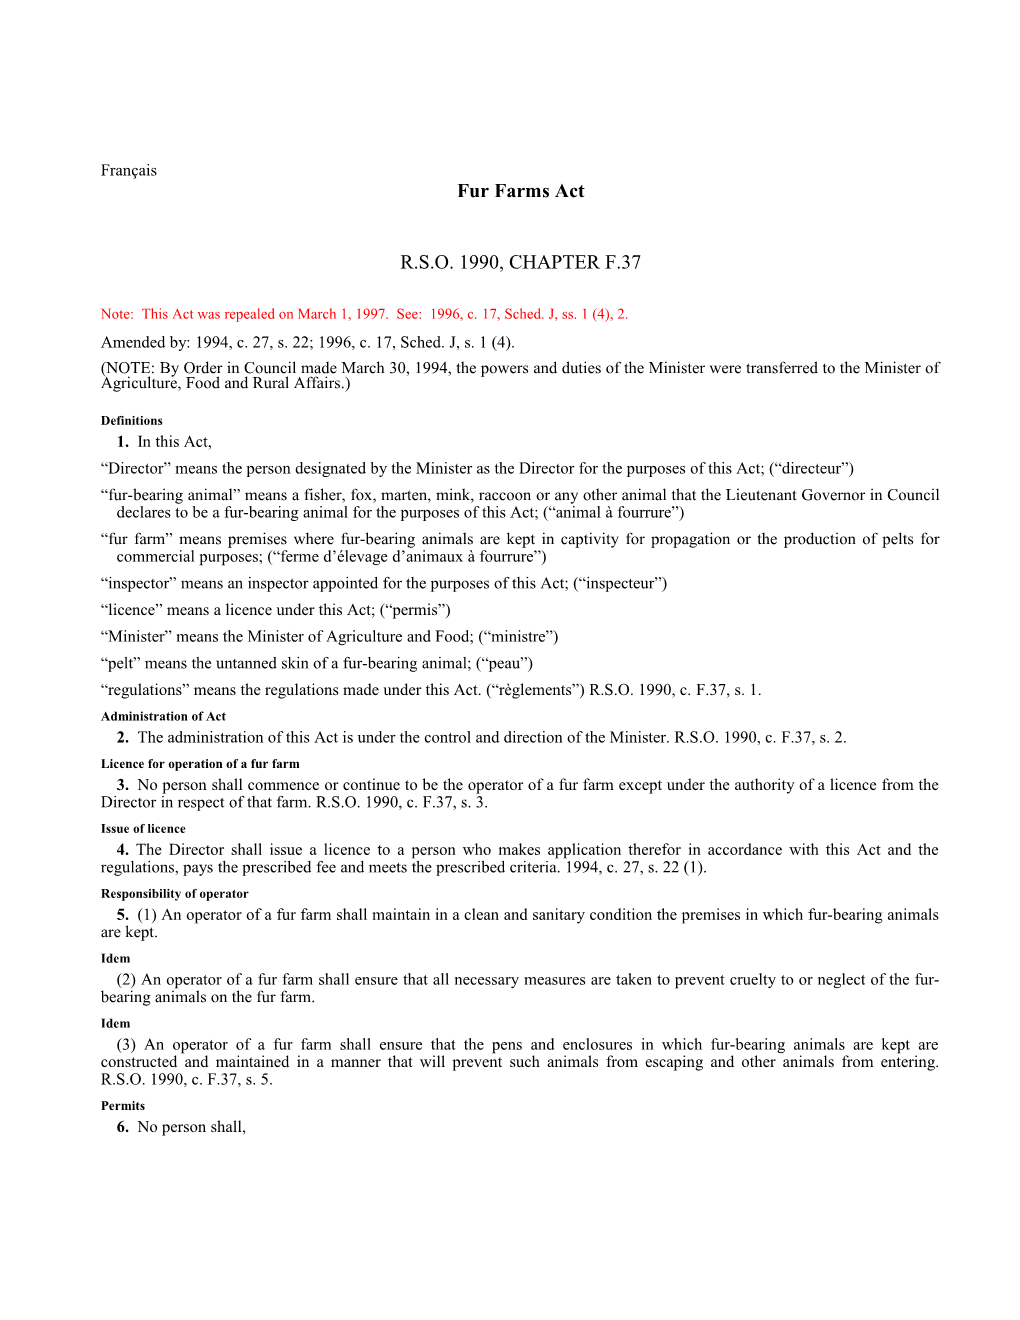 Fur Farms Act, R.S.O. 1990, C. F.37